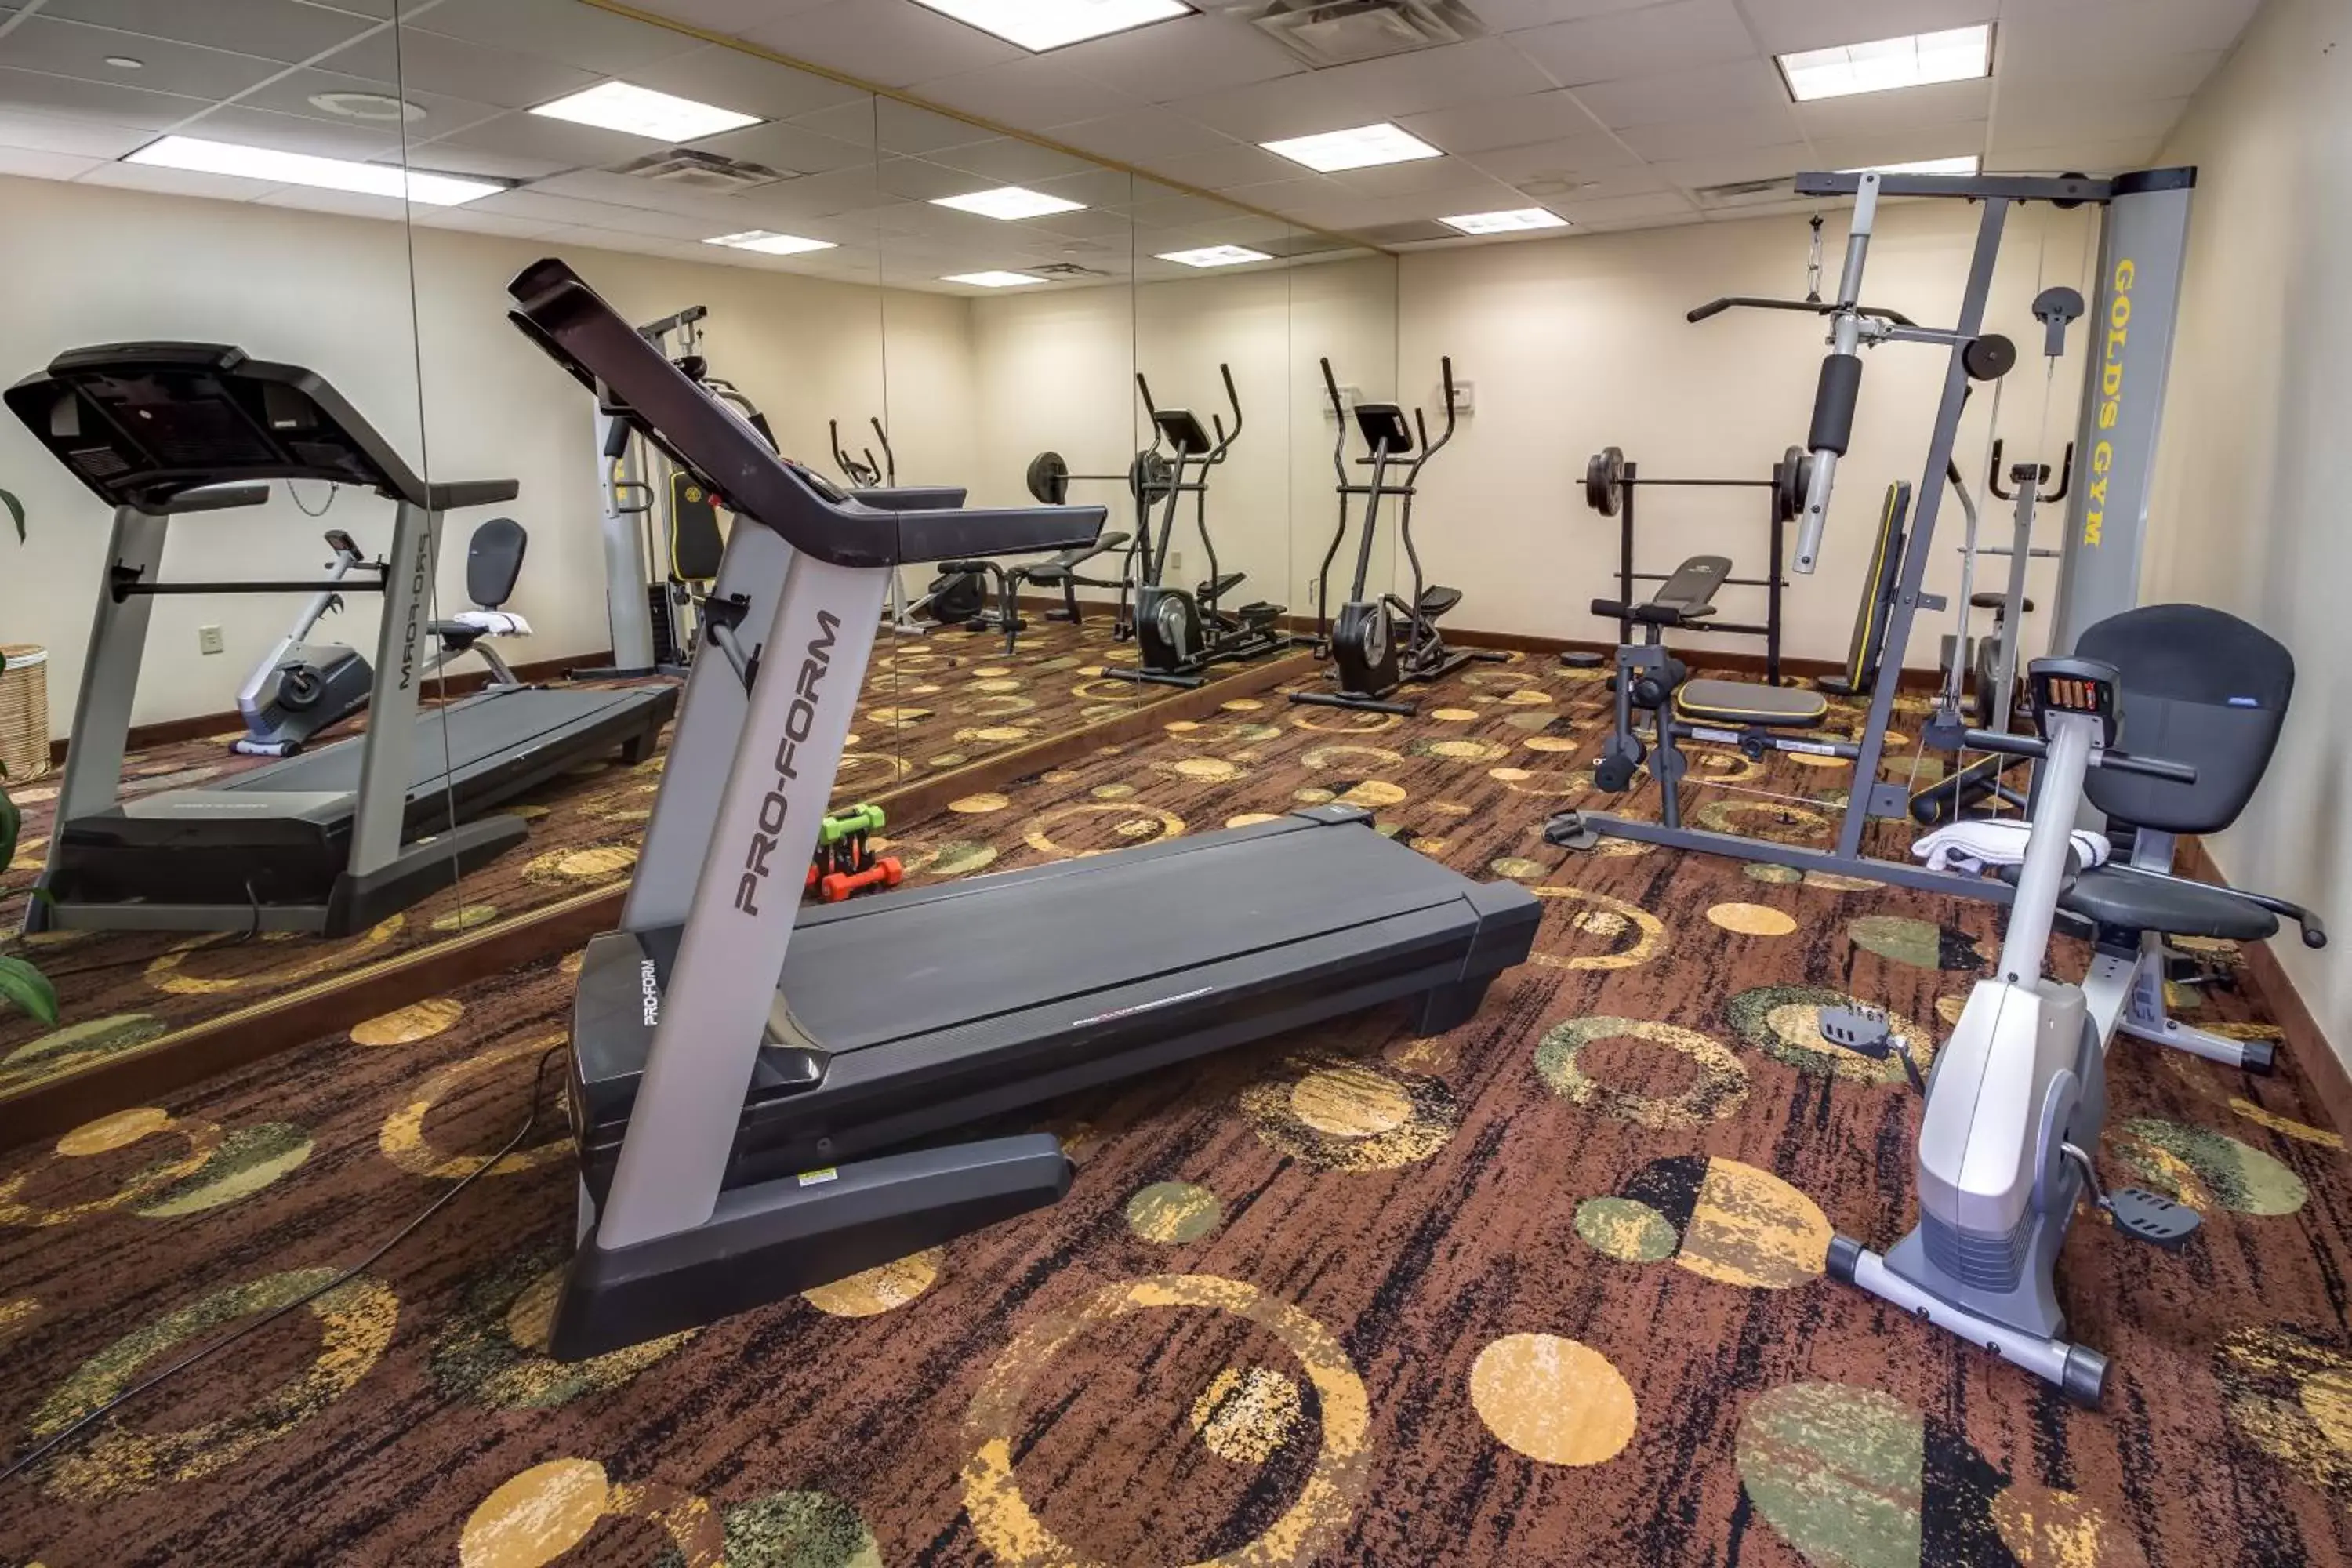 Fitness centre/facilities, Fitness Center/Facilities in Ashmore Inn Amarillo